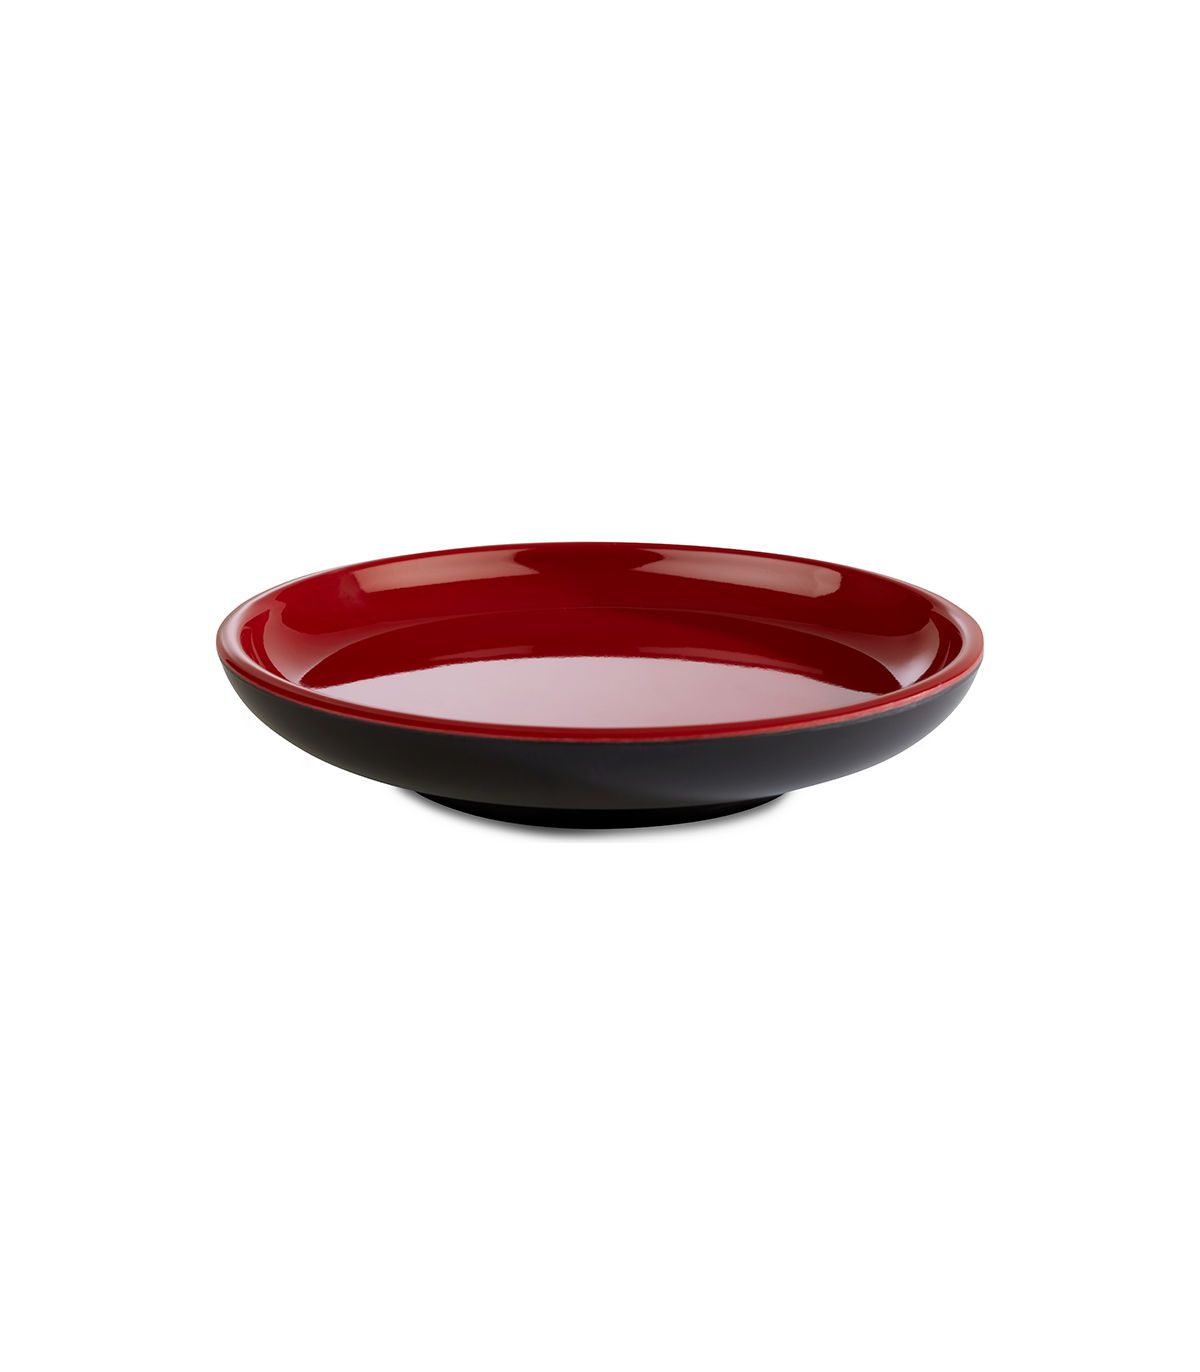 Assiette melamine rouge et noir Ø 11 cm : Stellinox